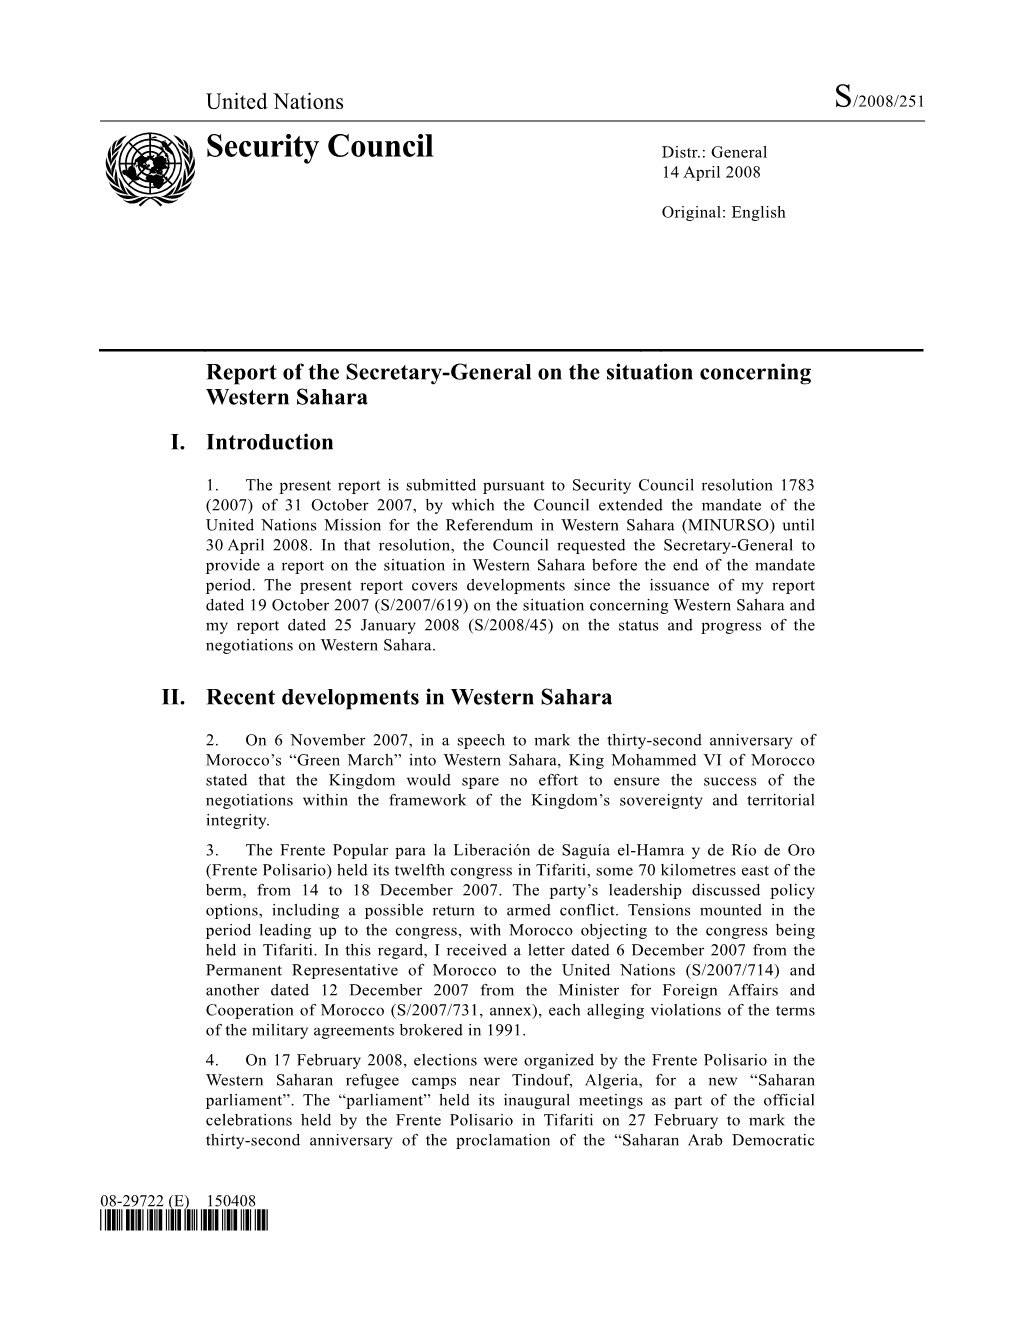 Security Council Distr.: General 14 April 2008